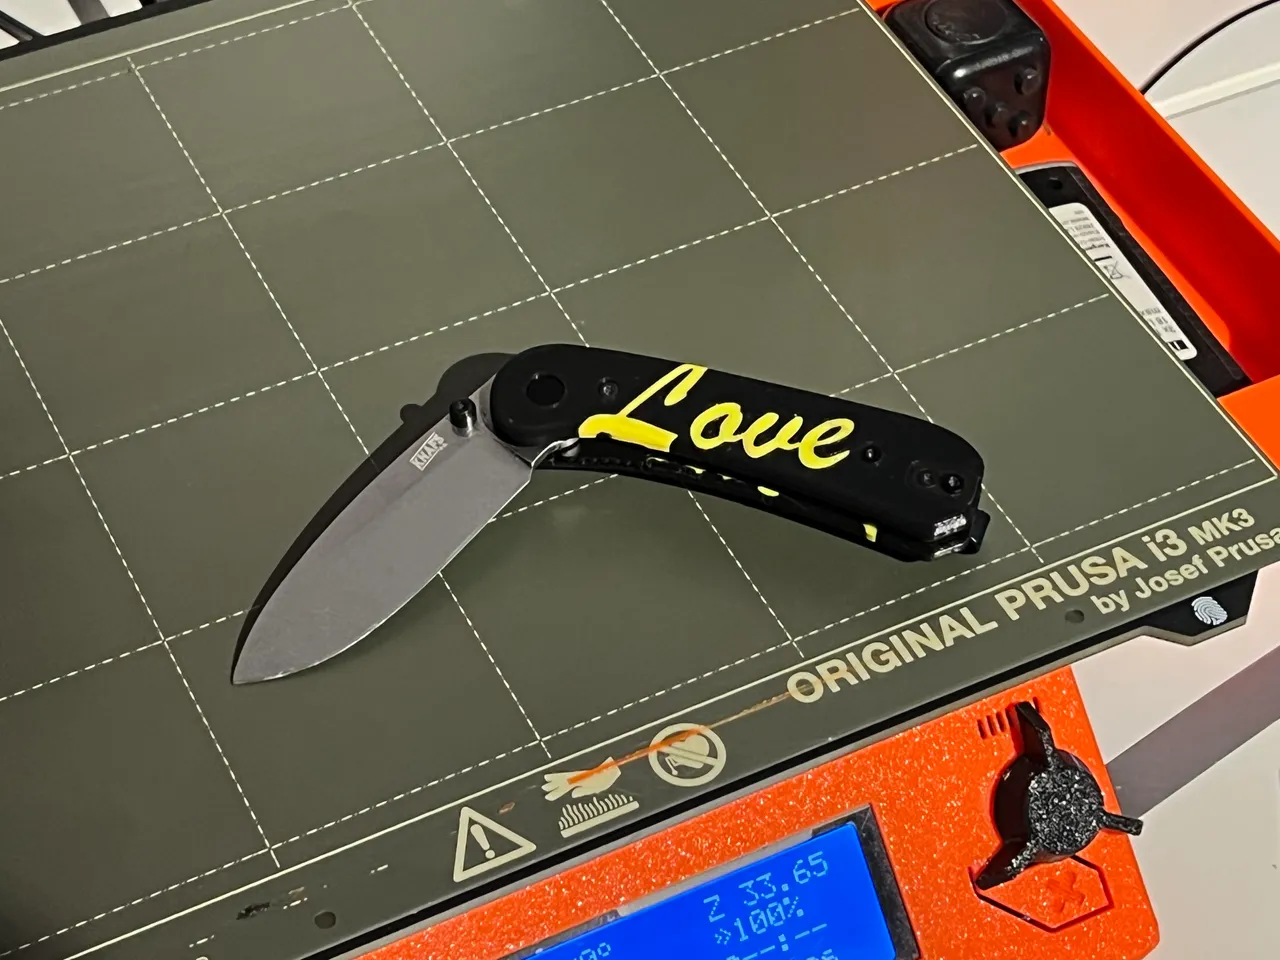 Knafs Lander Pocket Knife Scales by Ben Banters, Download free STL model